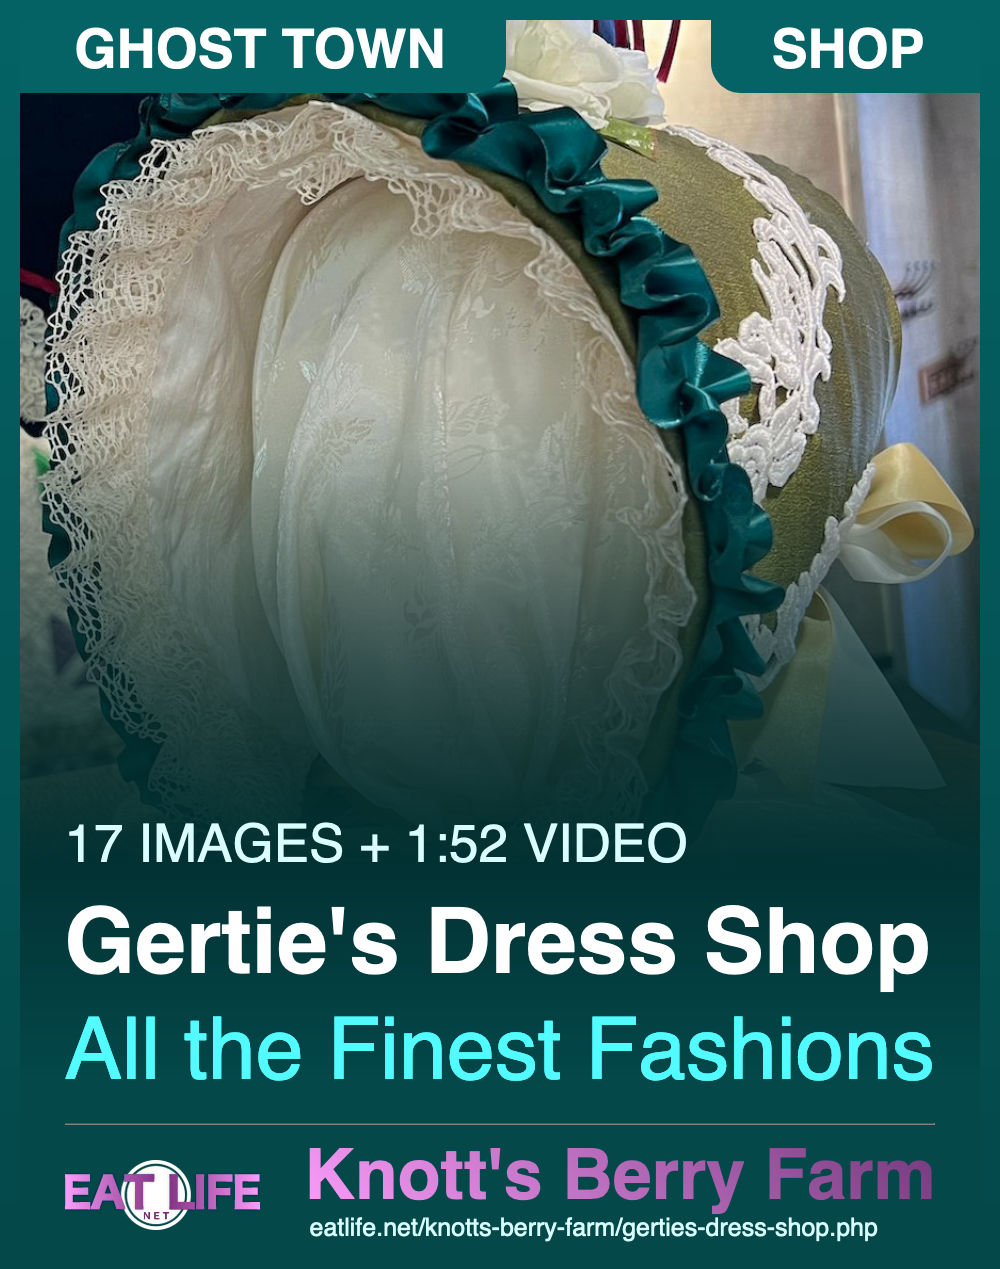 Gertie's Dress Shop